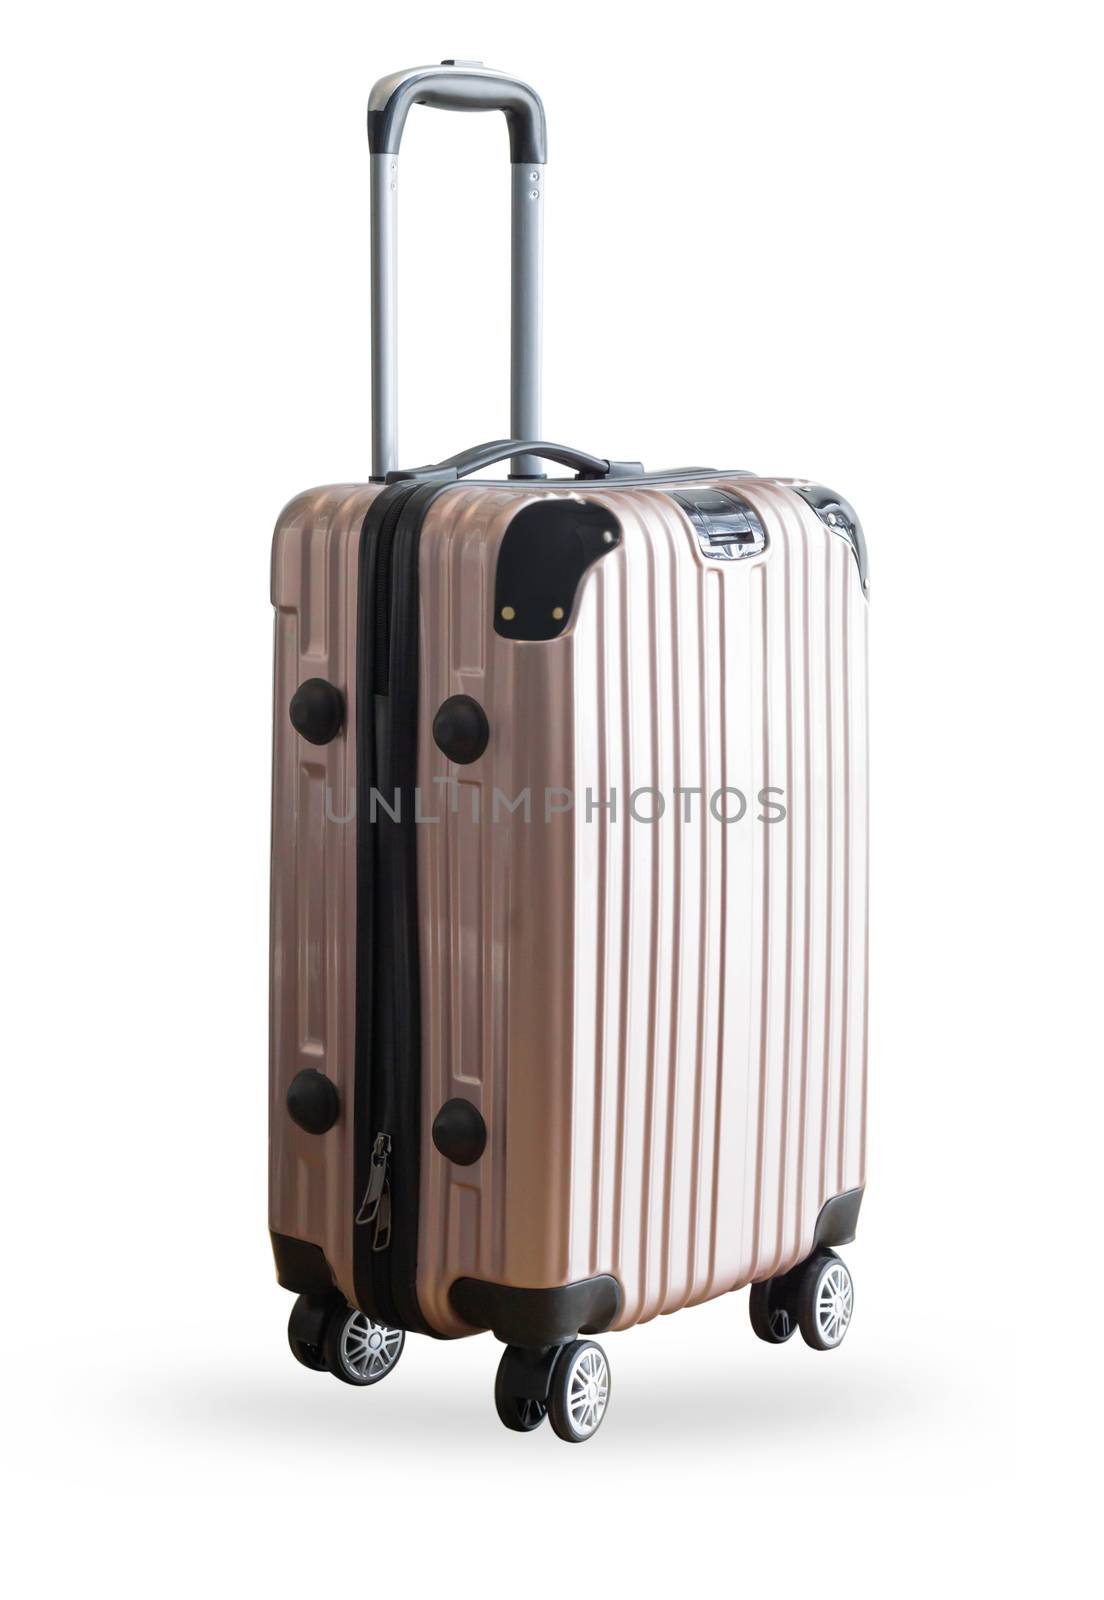 Pink traveler suitcase isolated on white background